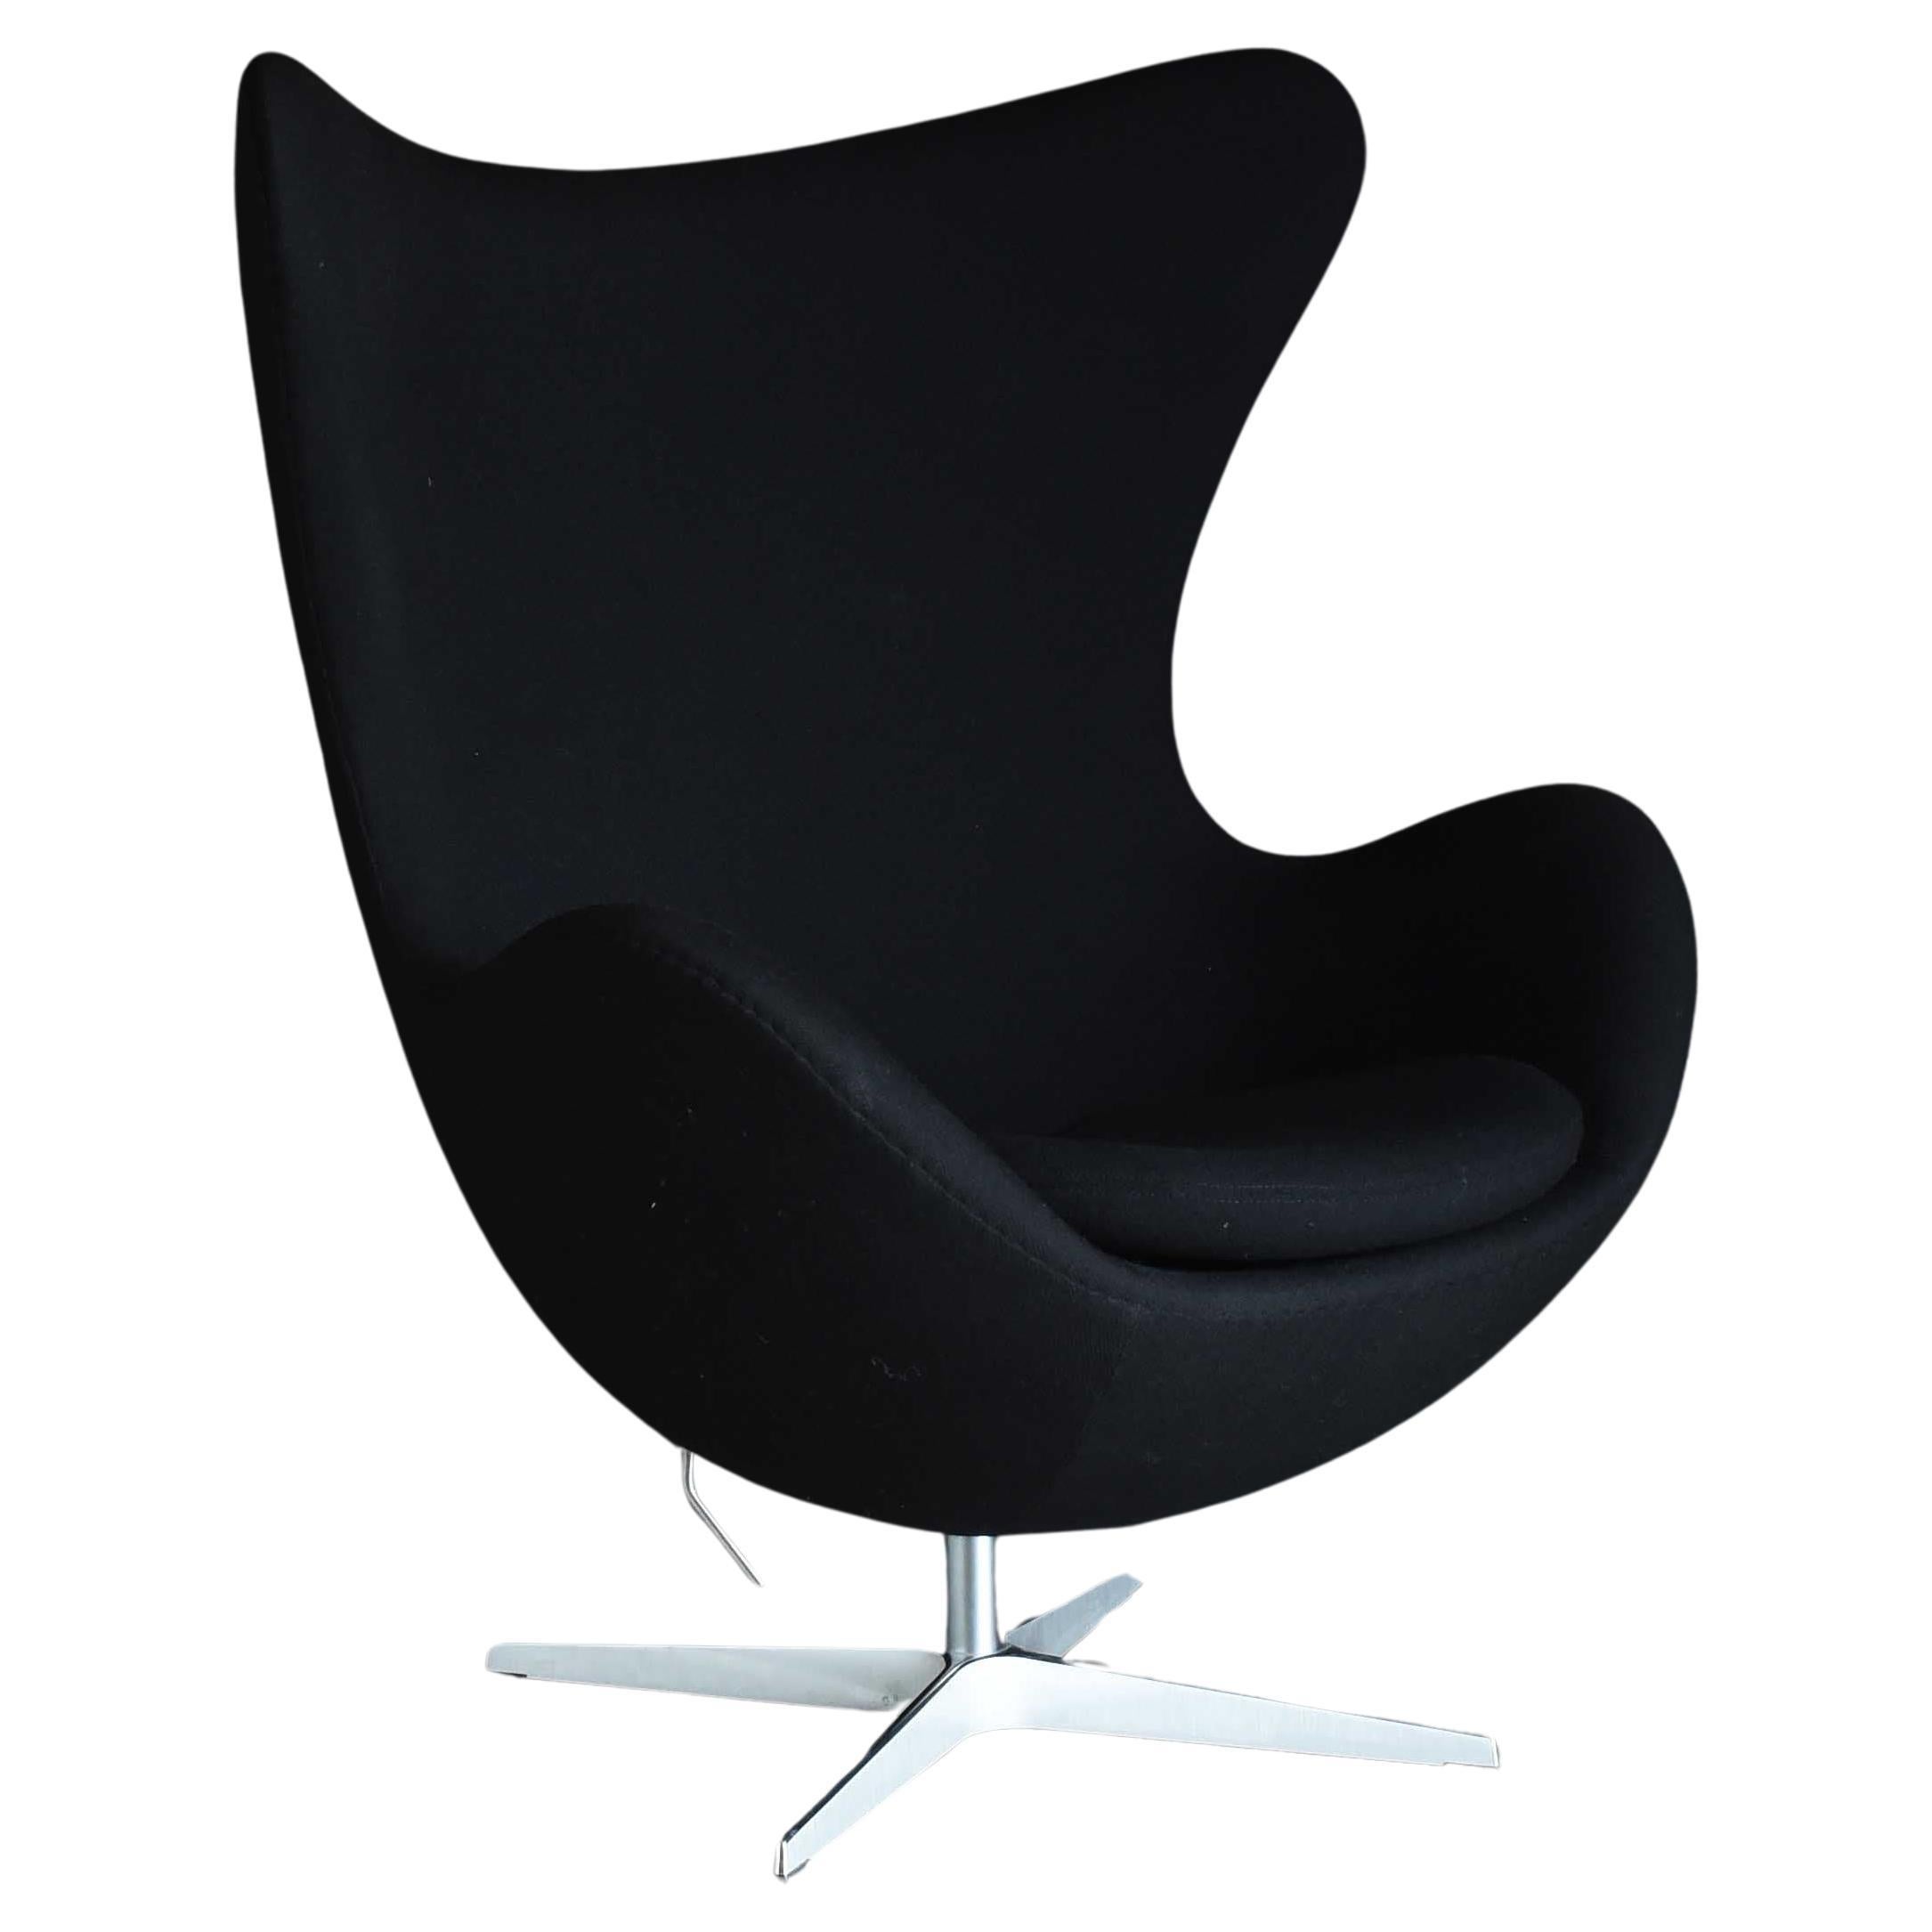 Arne Jacobsen, Midcentury Modern "Egg" Lounge Chair 3316 For Sale